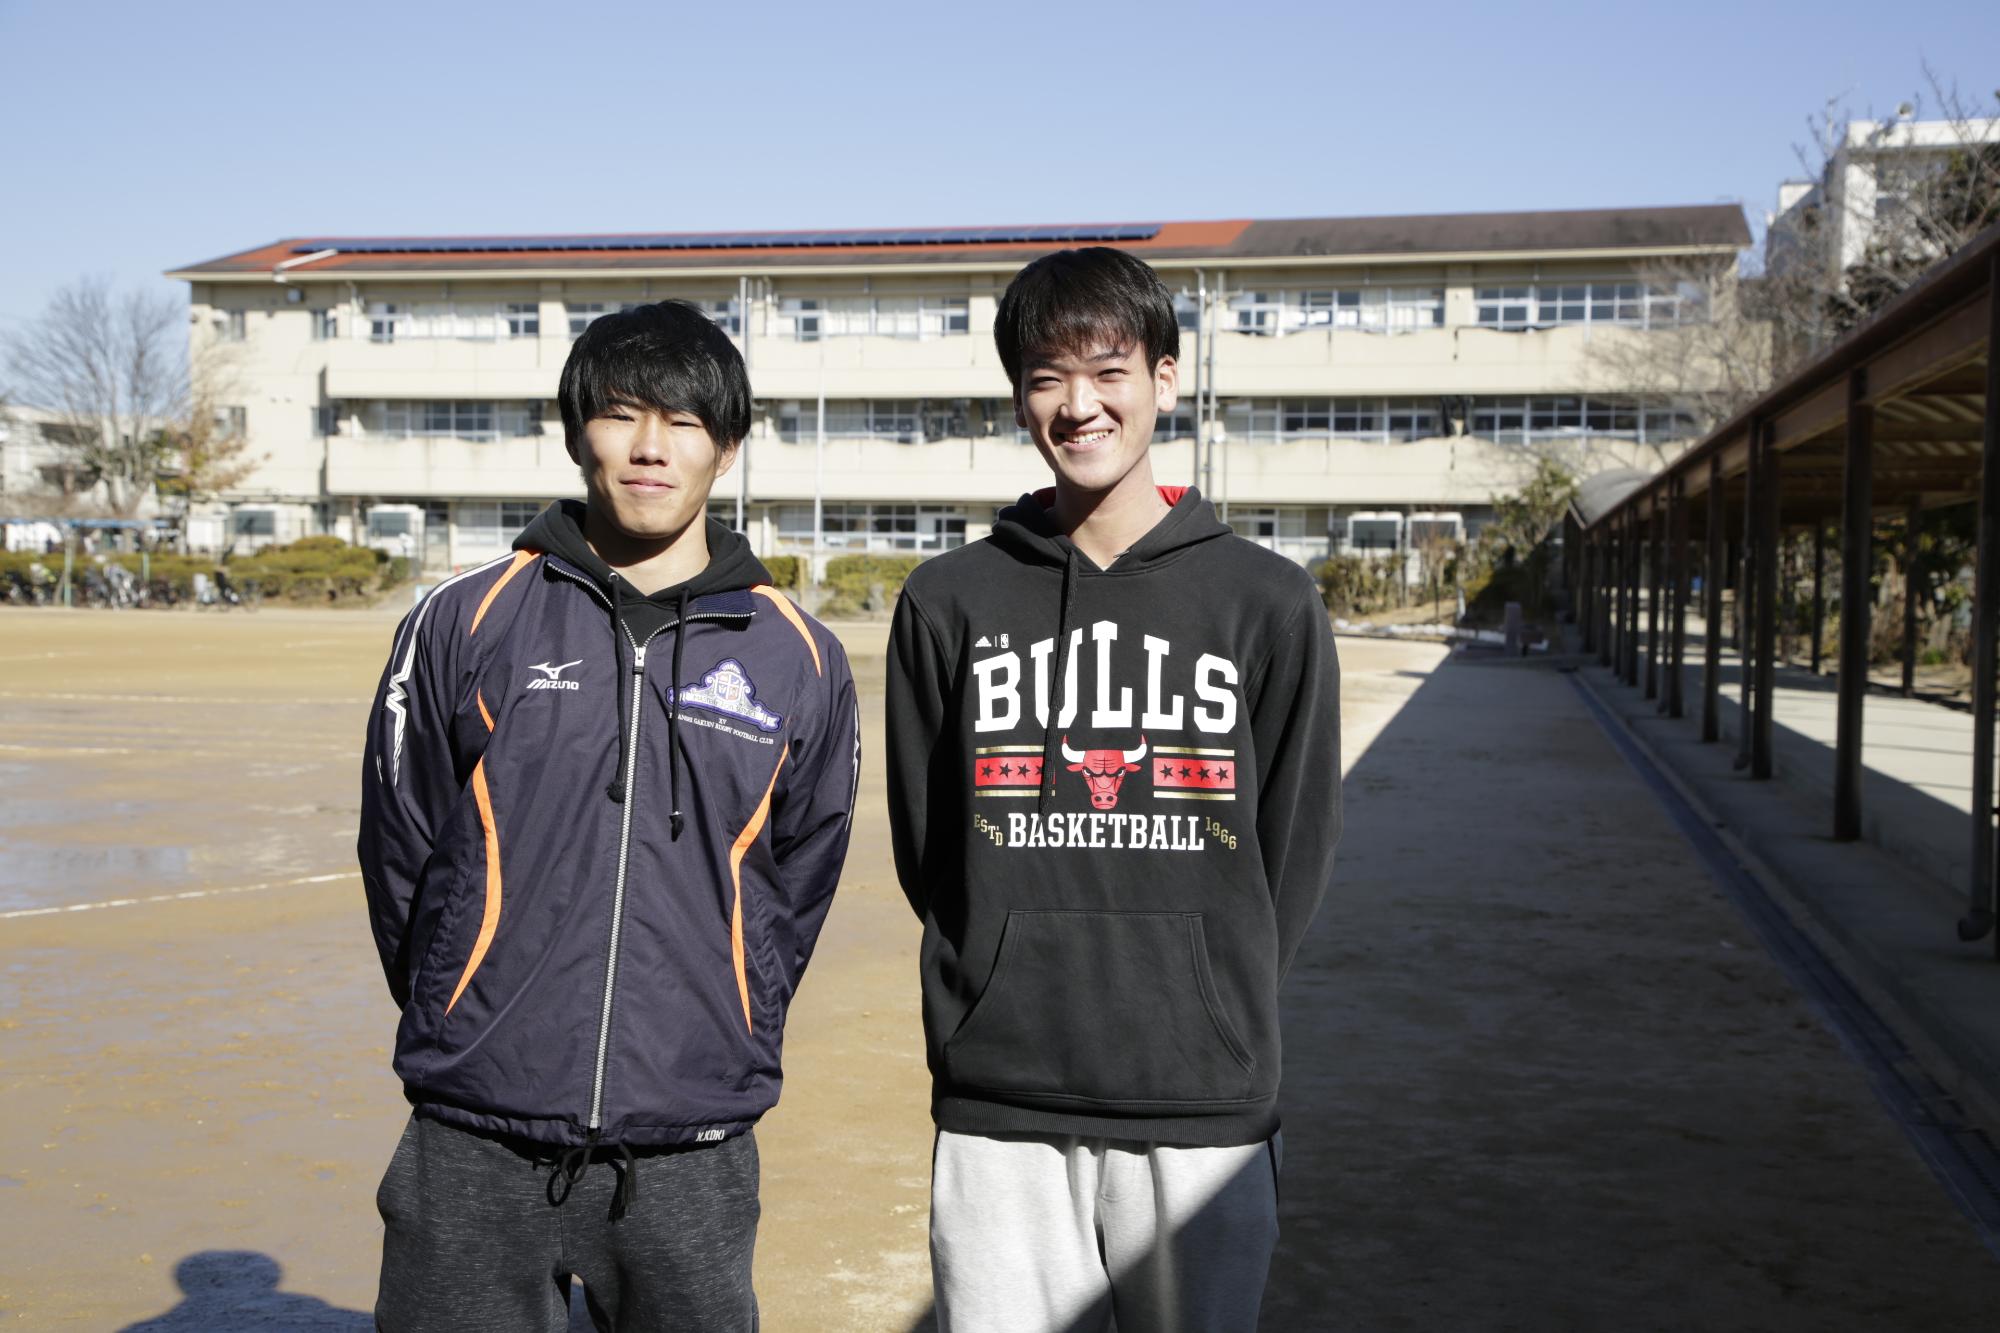 インタビューを受ける関西学院大学の学生二人が写った写真。屋外で撮影されており、写真中央にが学生二人が並んでる。